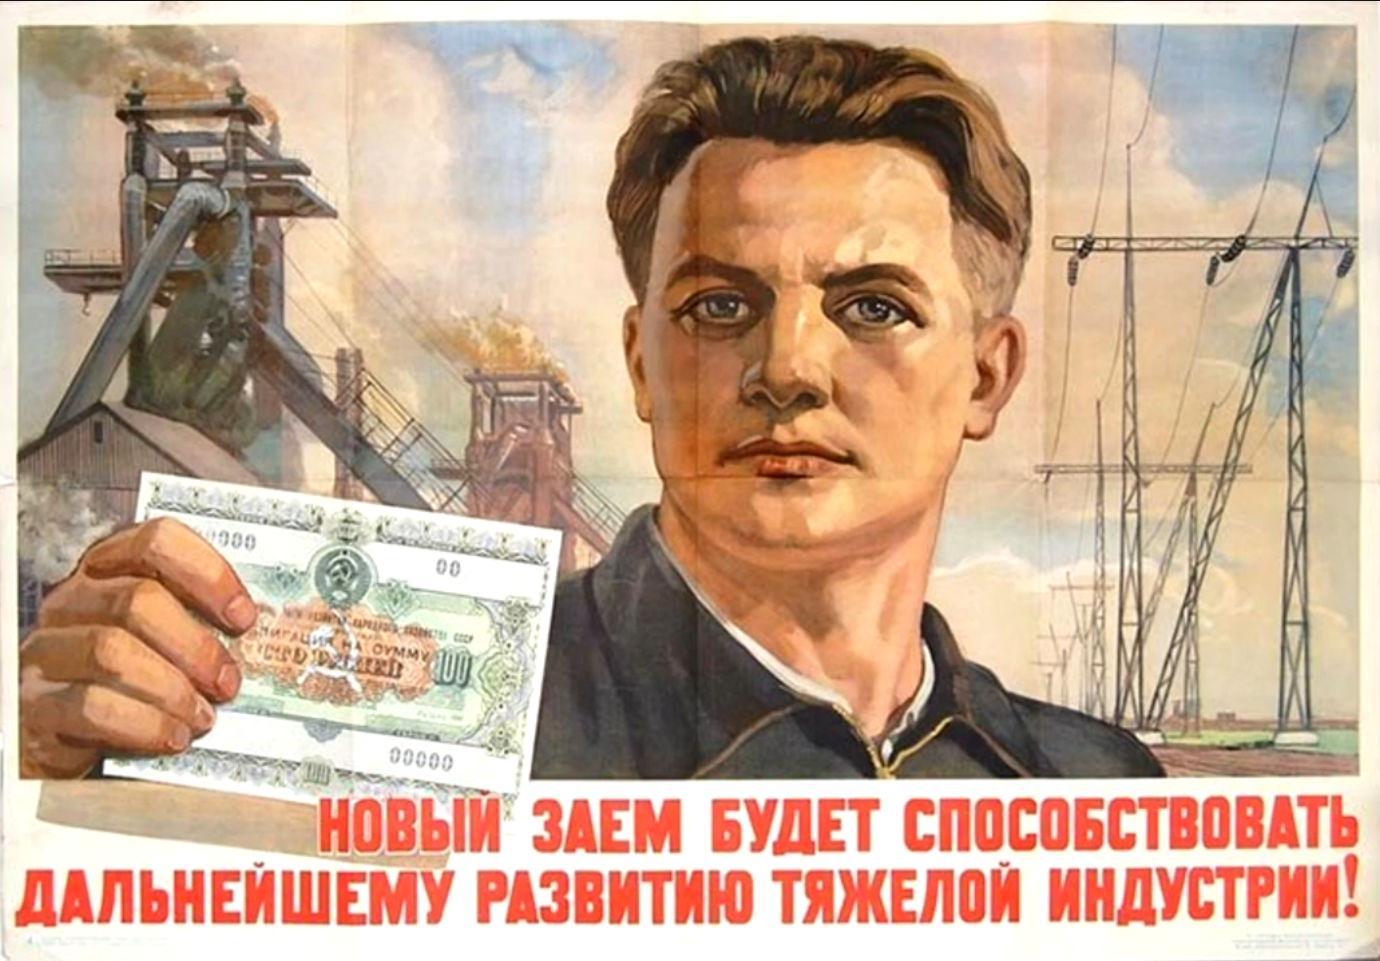 Военным дадут деньги. Советские плакаты. Советские плакаты про деньги. Плакат про деньги. Облигации плакат.